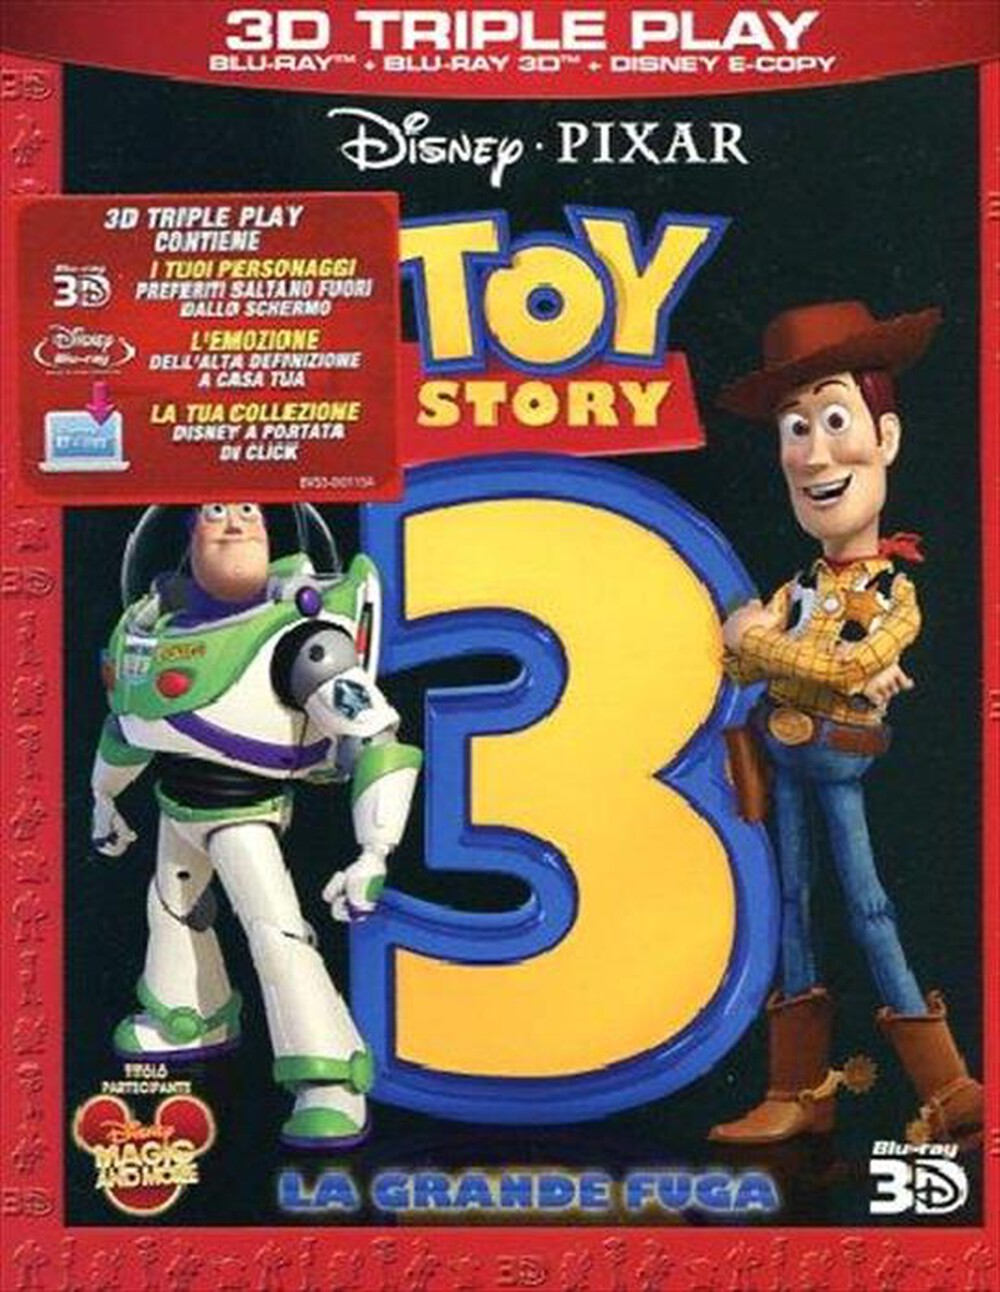 "WALT DISNEY - Toy Story 3 - La Grande Fuga (3D) (Blu-Ray+Blu-R - "